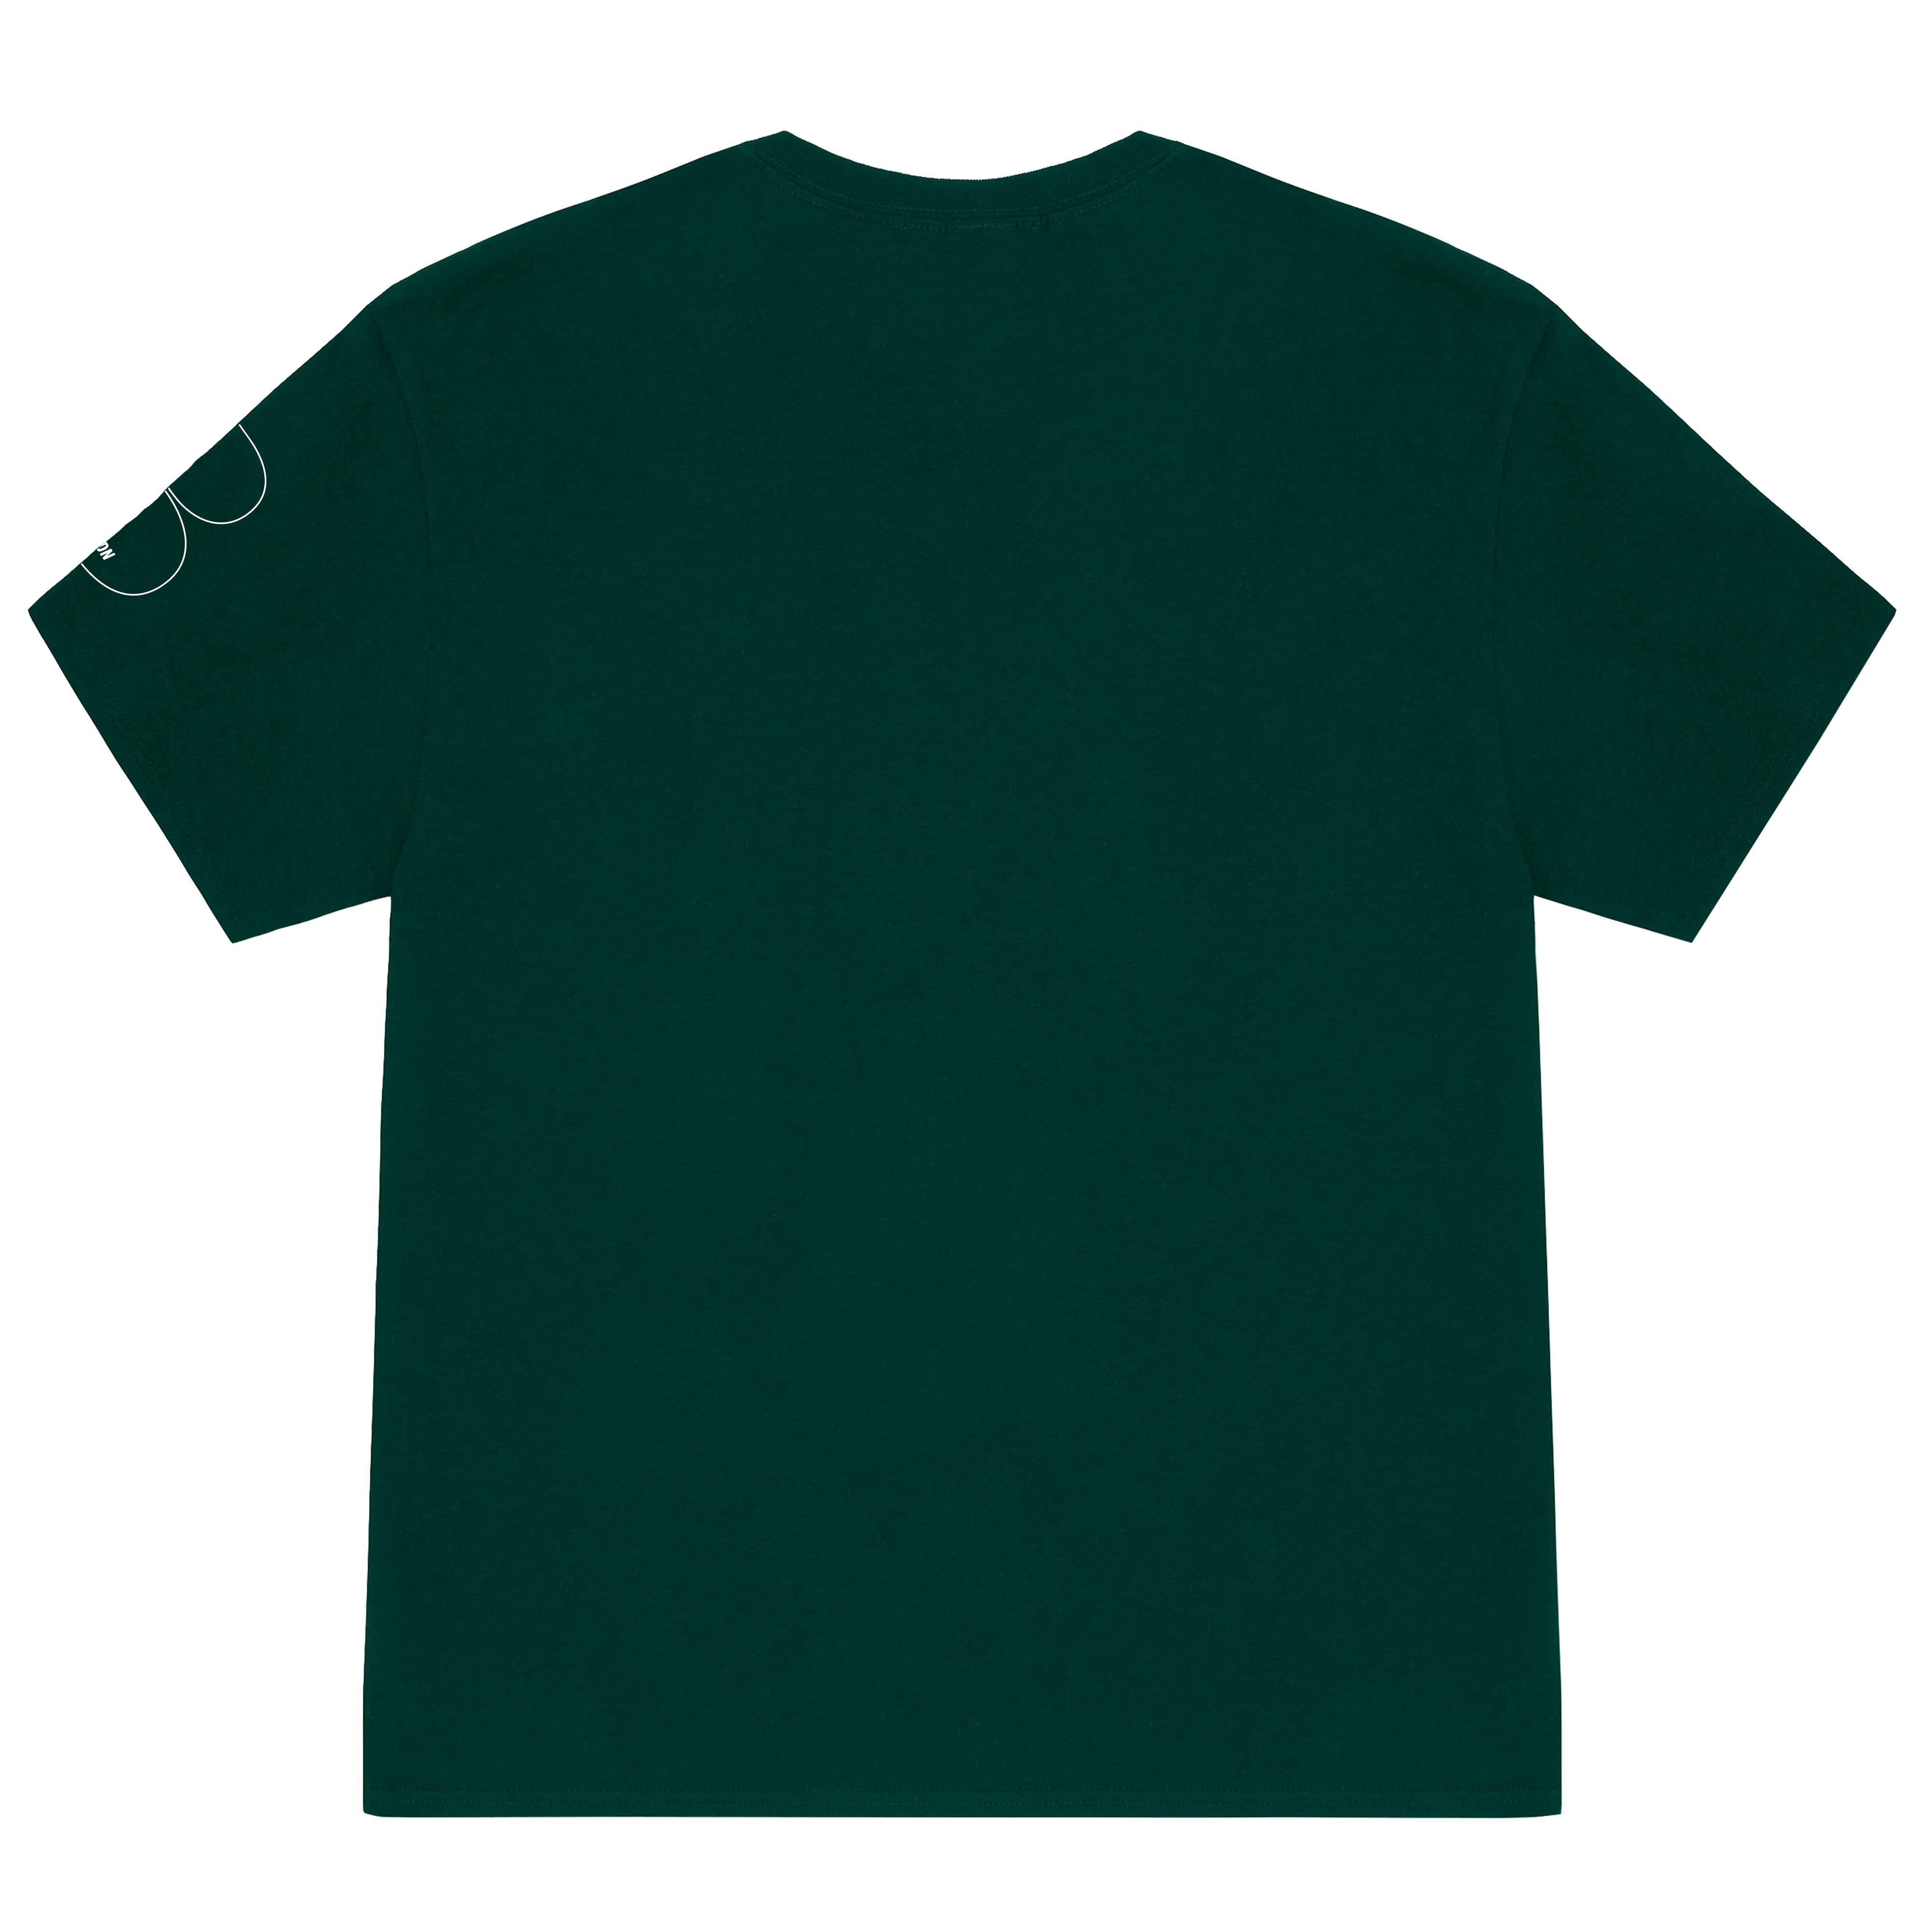 Racing Green OG Outline T-Shirt - White Print